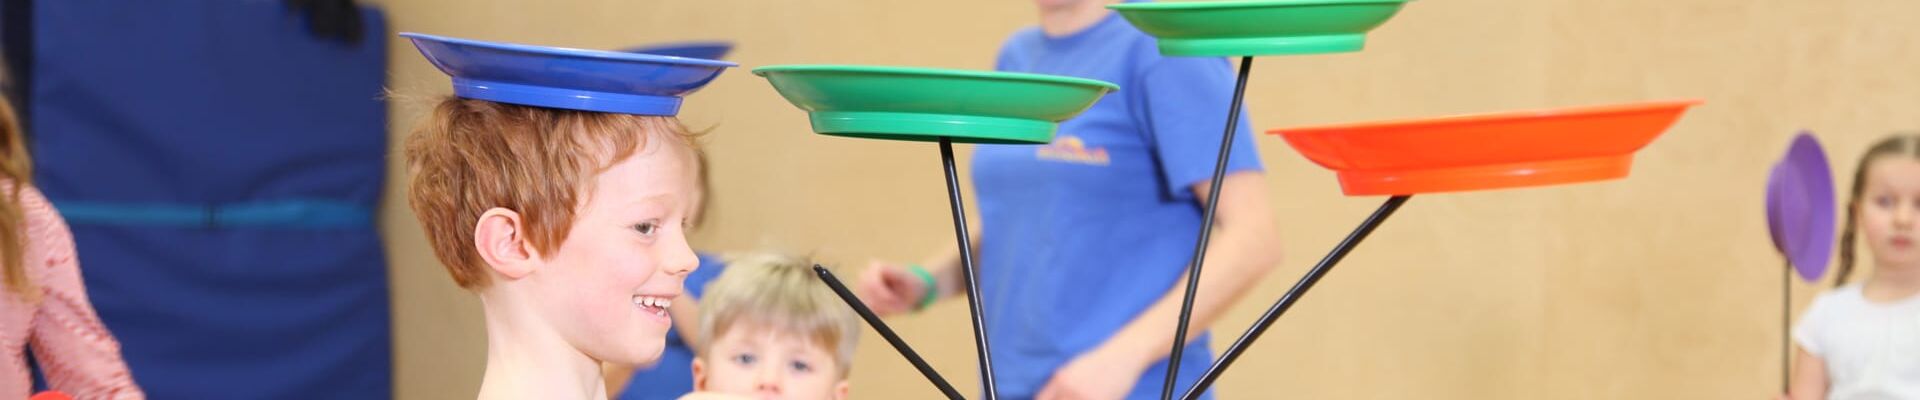 Kind aus Kita jongliert mit drei Tellern im Kölner Spielecircus